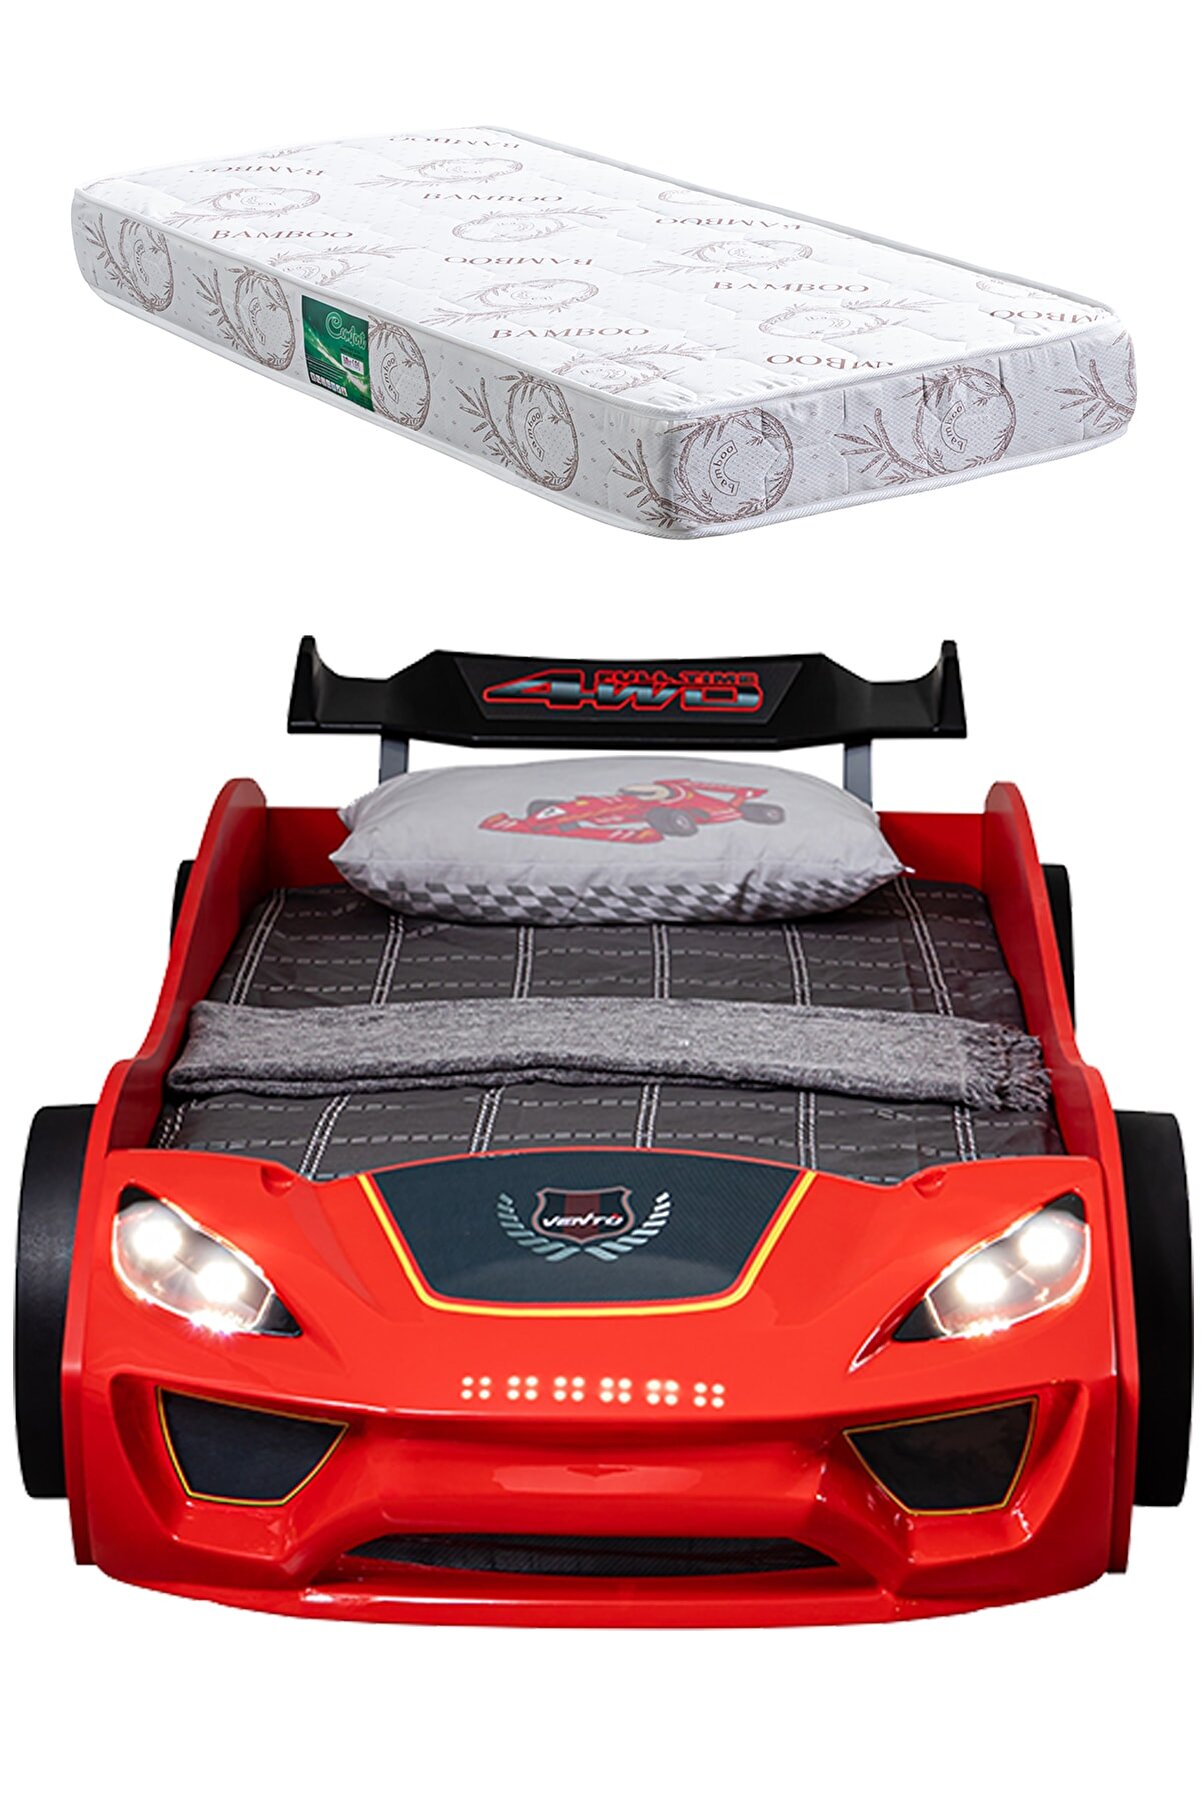 Setay Arabalı Yatak, Vento Kırmızı Arabalı Yatak Karyolası + 1 Adet Comfort Yatak